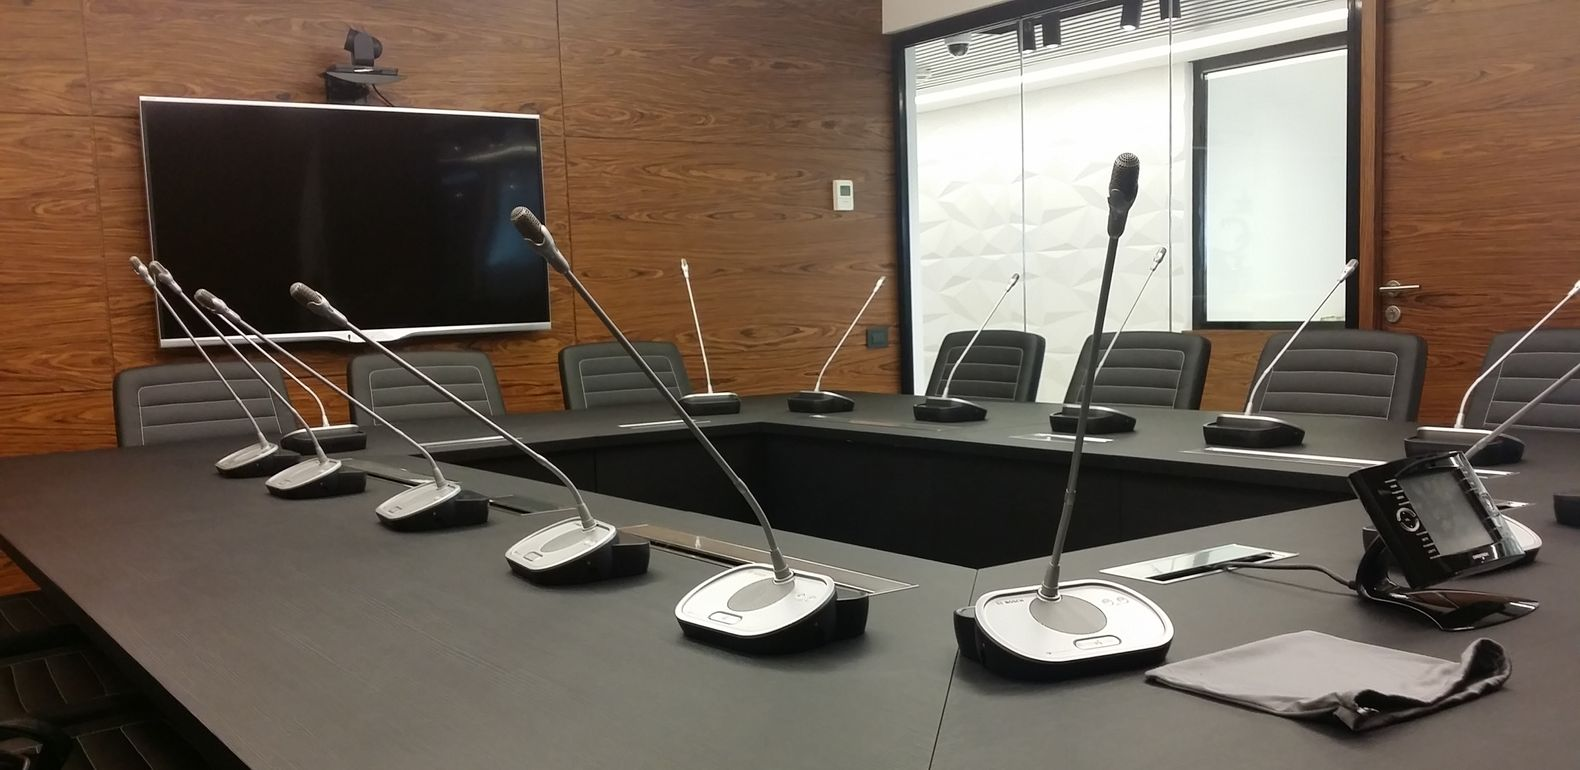 Переговорная комната с установленным оборудованием. Источник